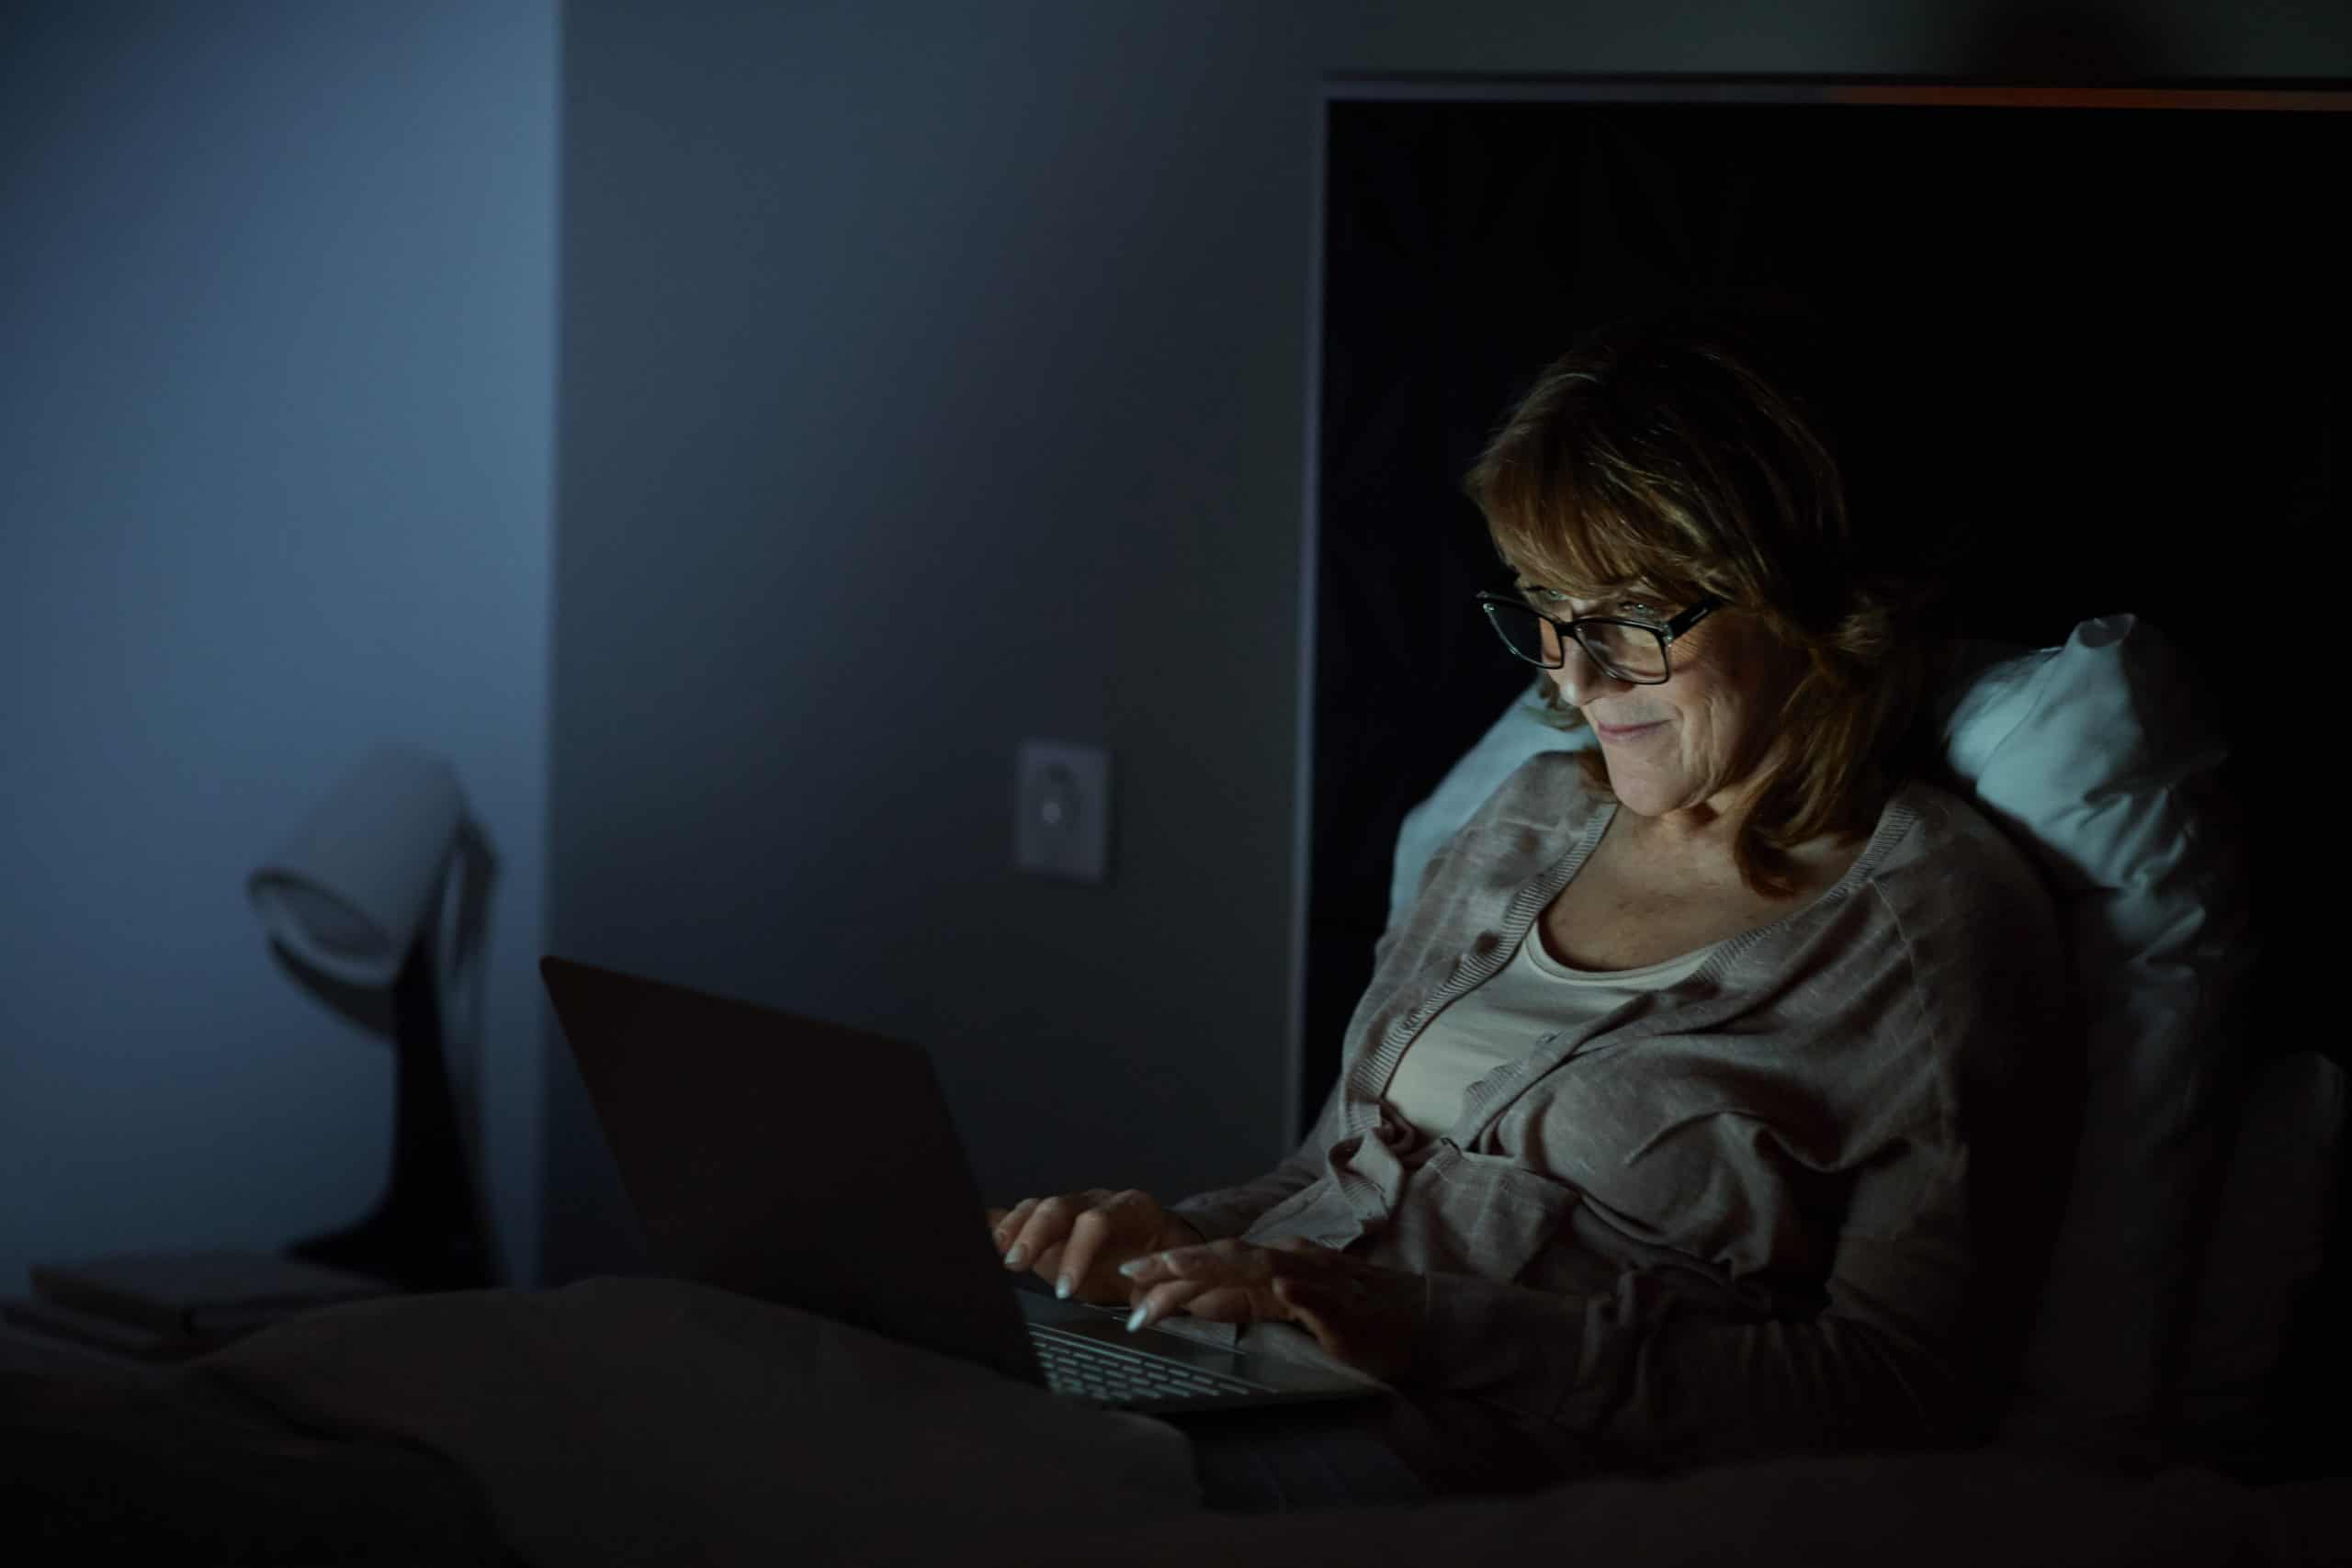 Frau mit Laptop im Bett